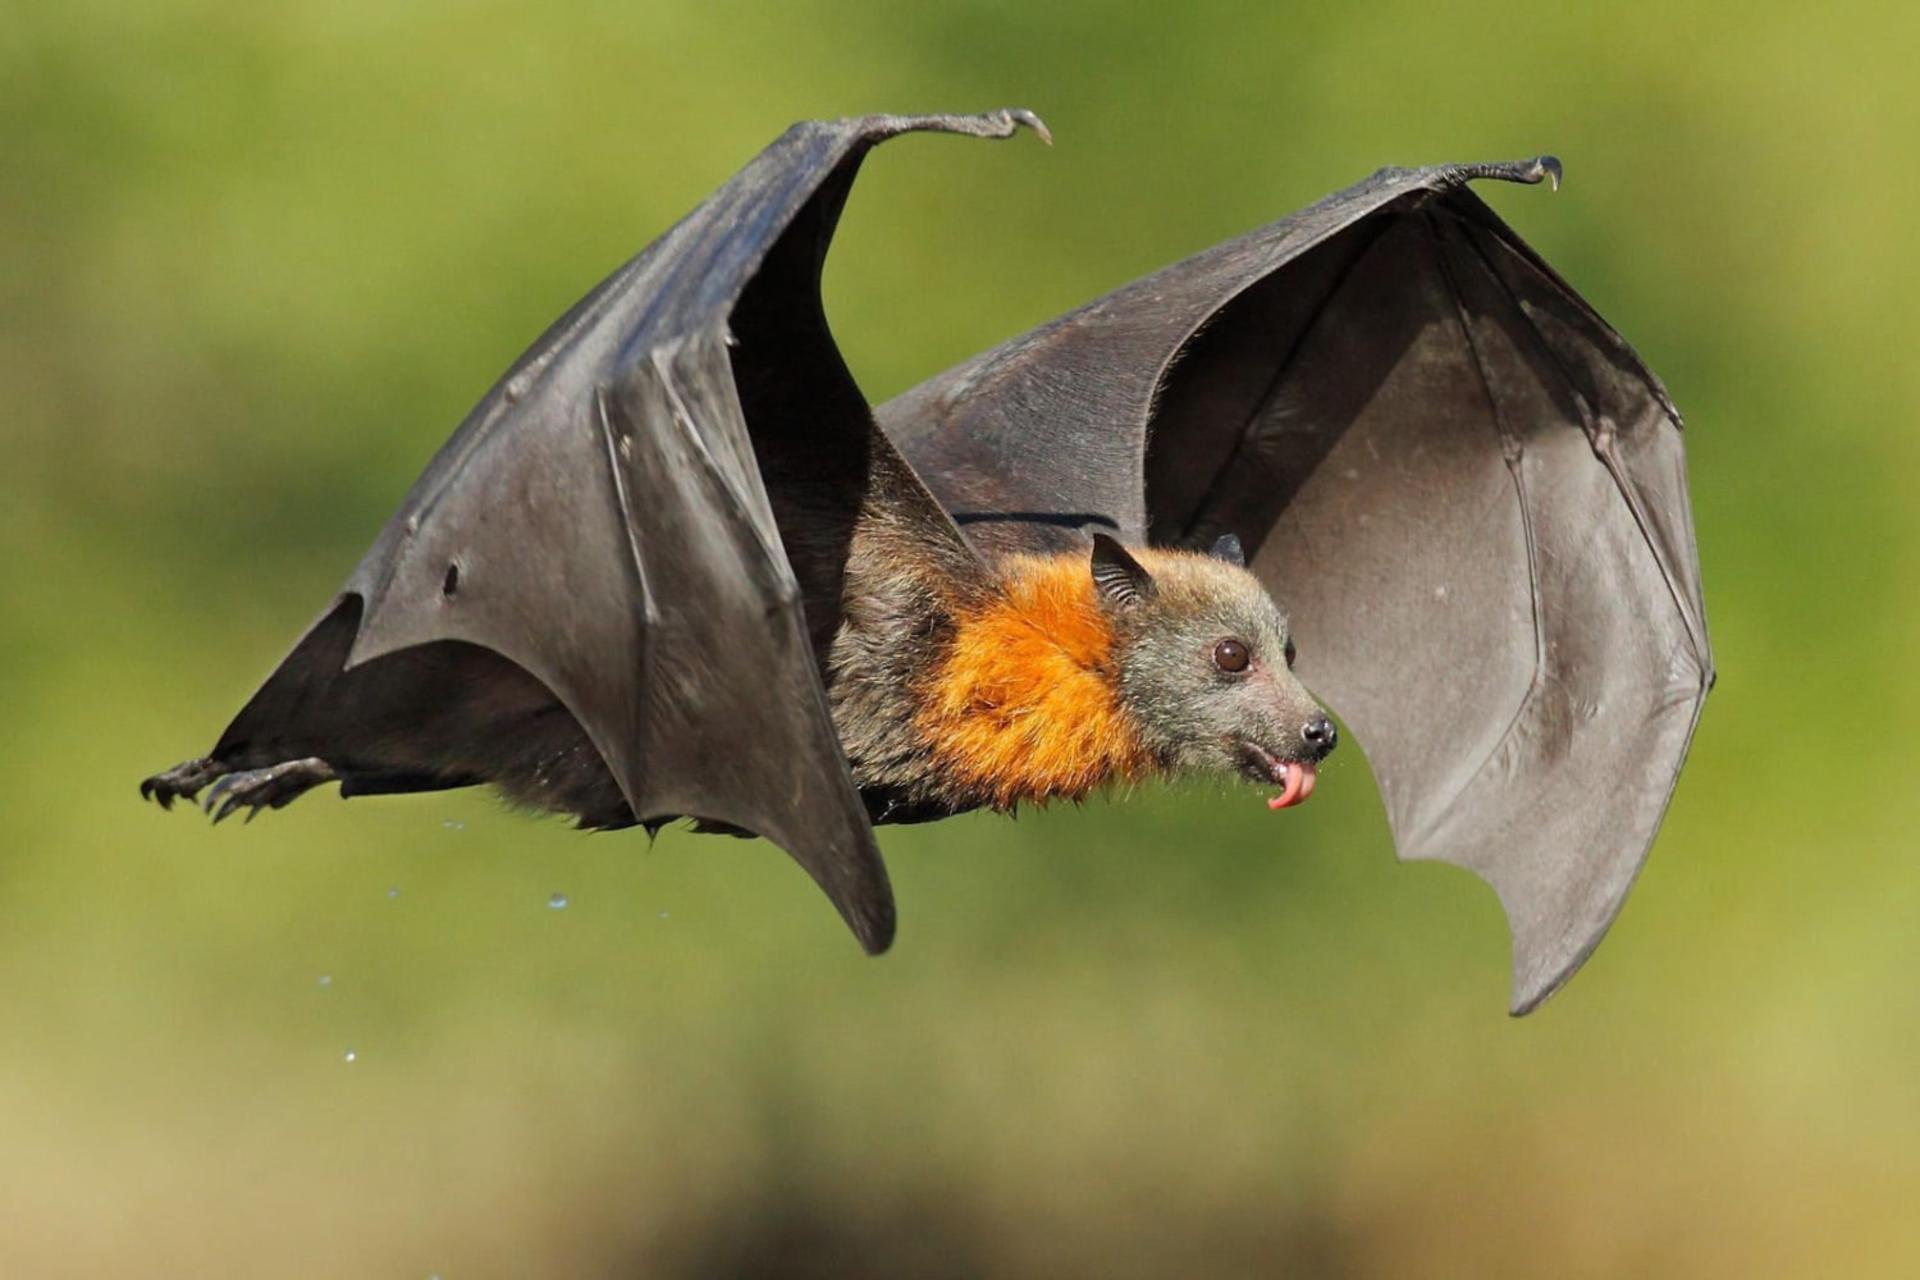 خفاش در حال پرواز در هوا در فضای سبز